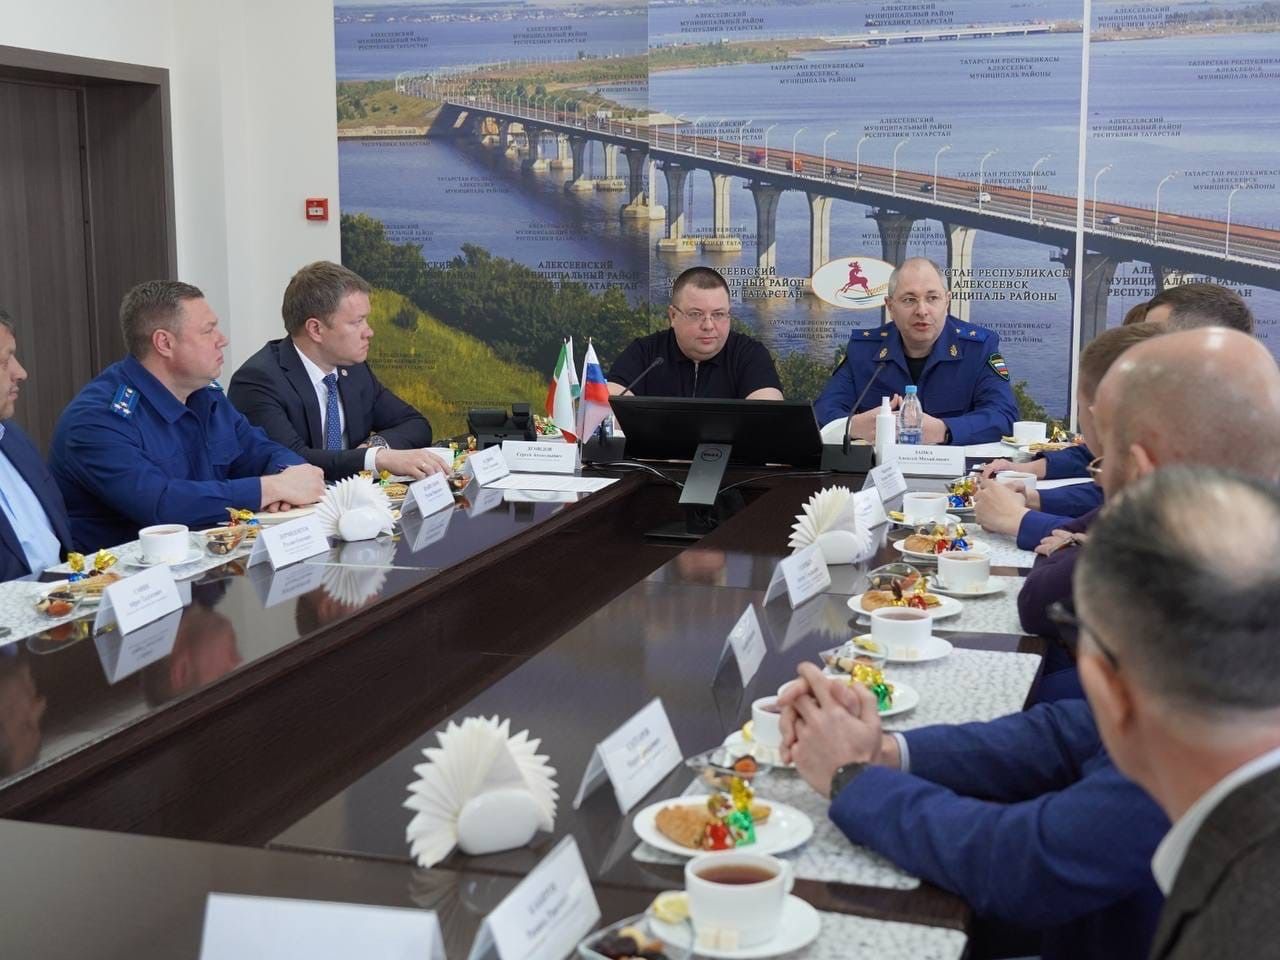 Исполняющий обязанности прокурора РТ Алексей Заика отметил позитивный предпринимательский климат на территории Алексеевского района